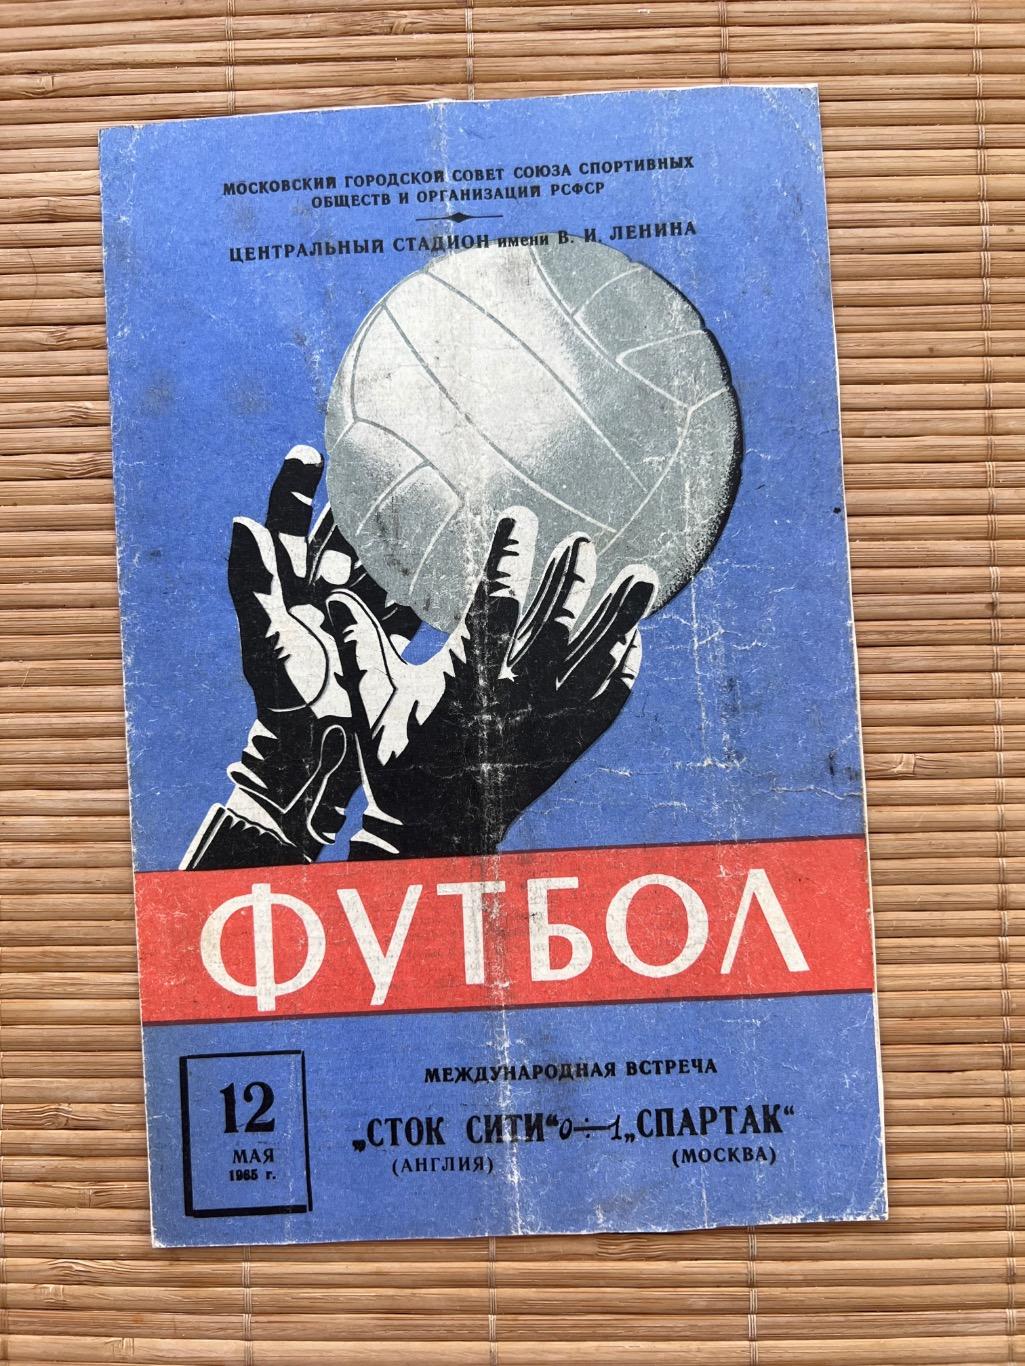 Спартак Москва - Сток Сити 12.05.1965